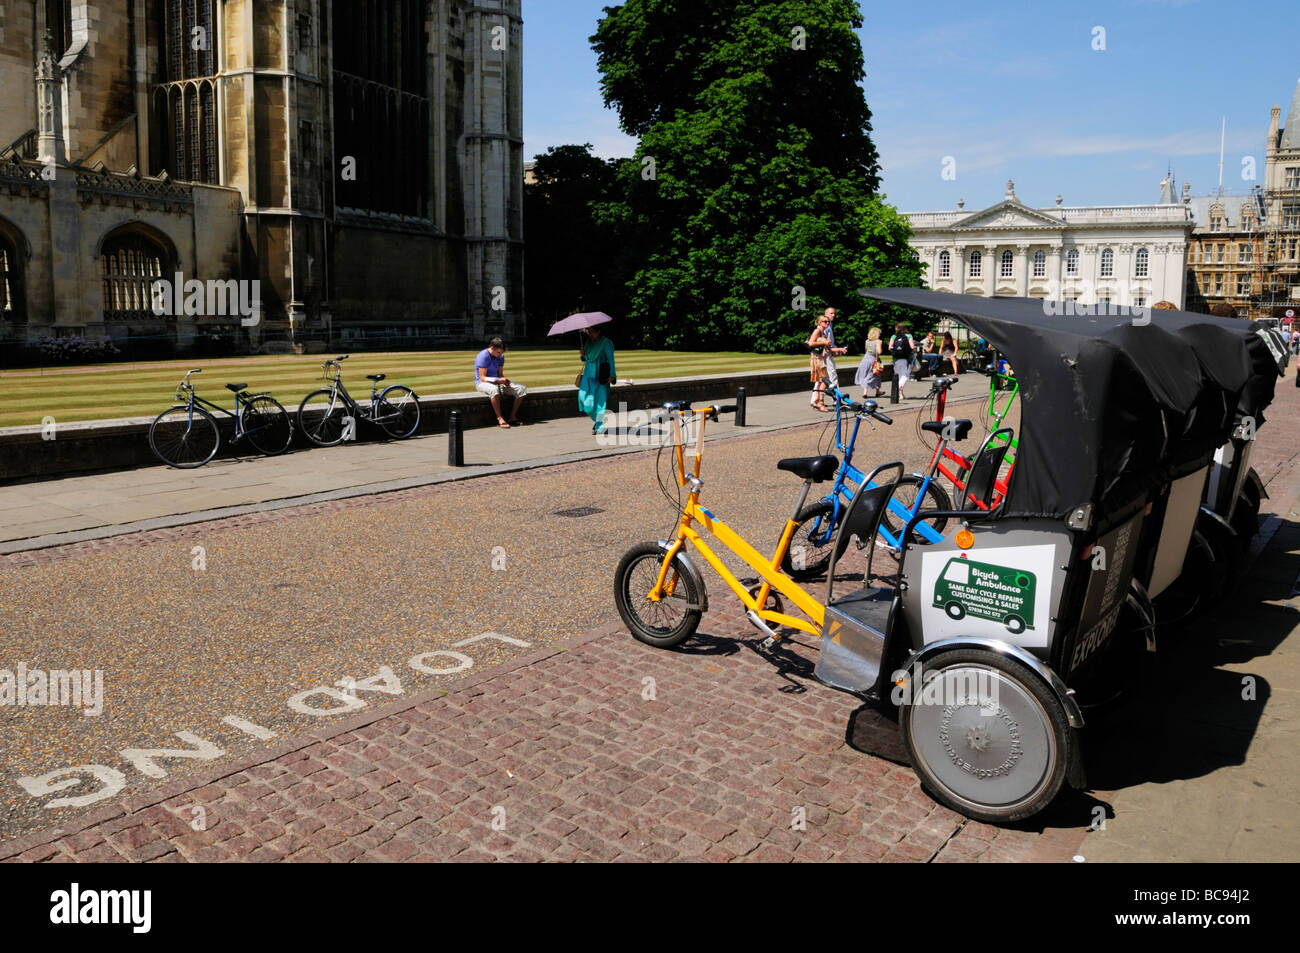 Un rang de cyclo-pousse cycle disponibles à la location par les touristes à l'extérieur du Kings College de Cambridge en Angleterre, Royaume-Uni Banque D'Images